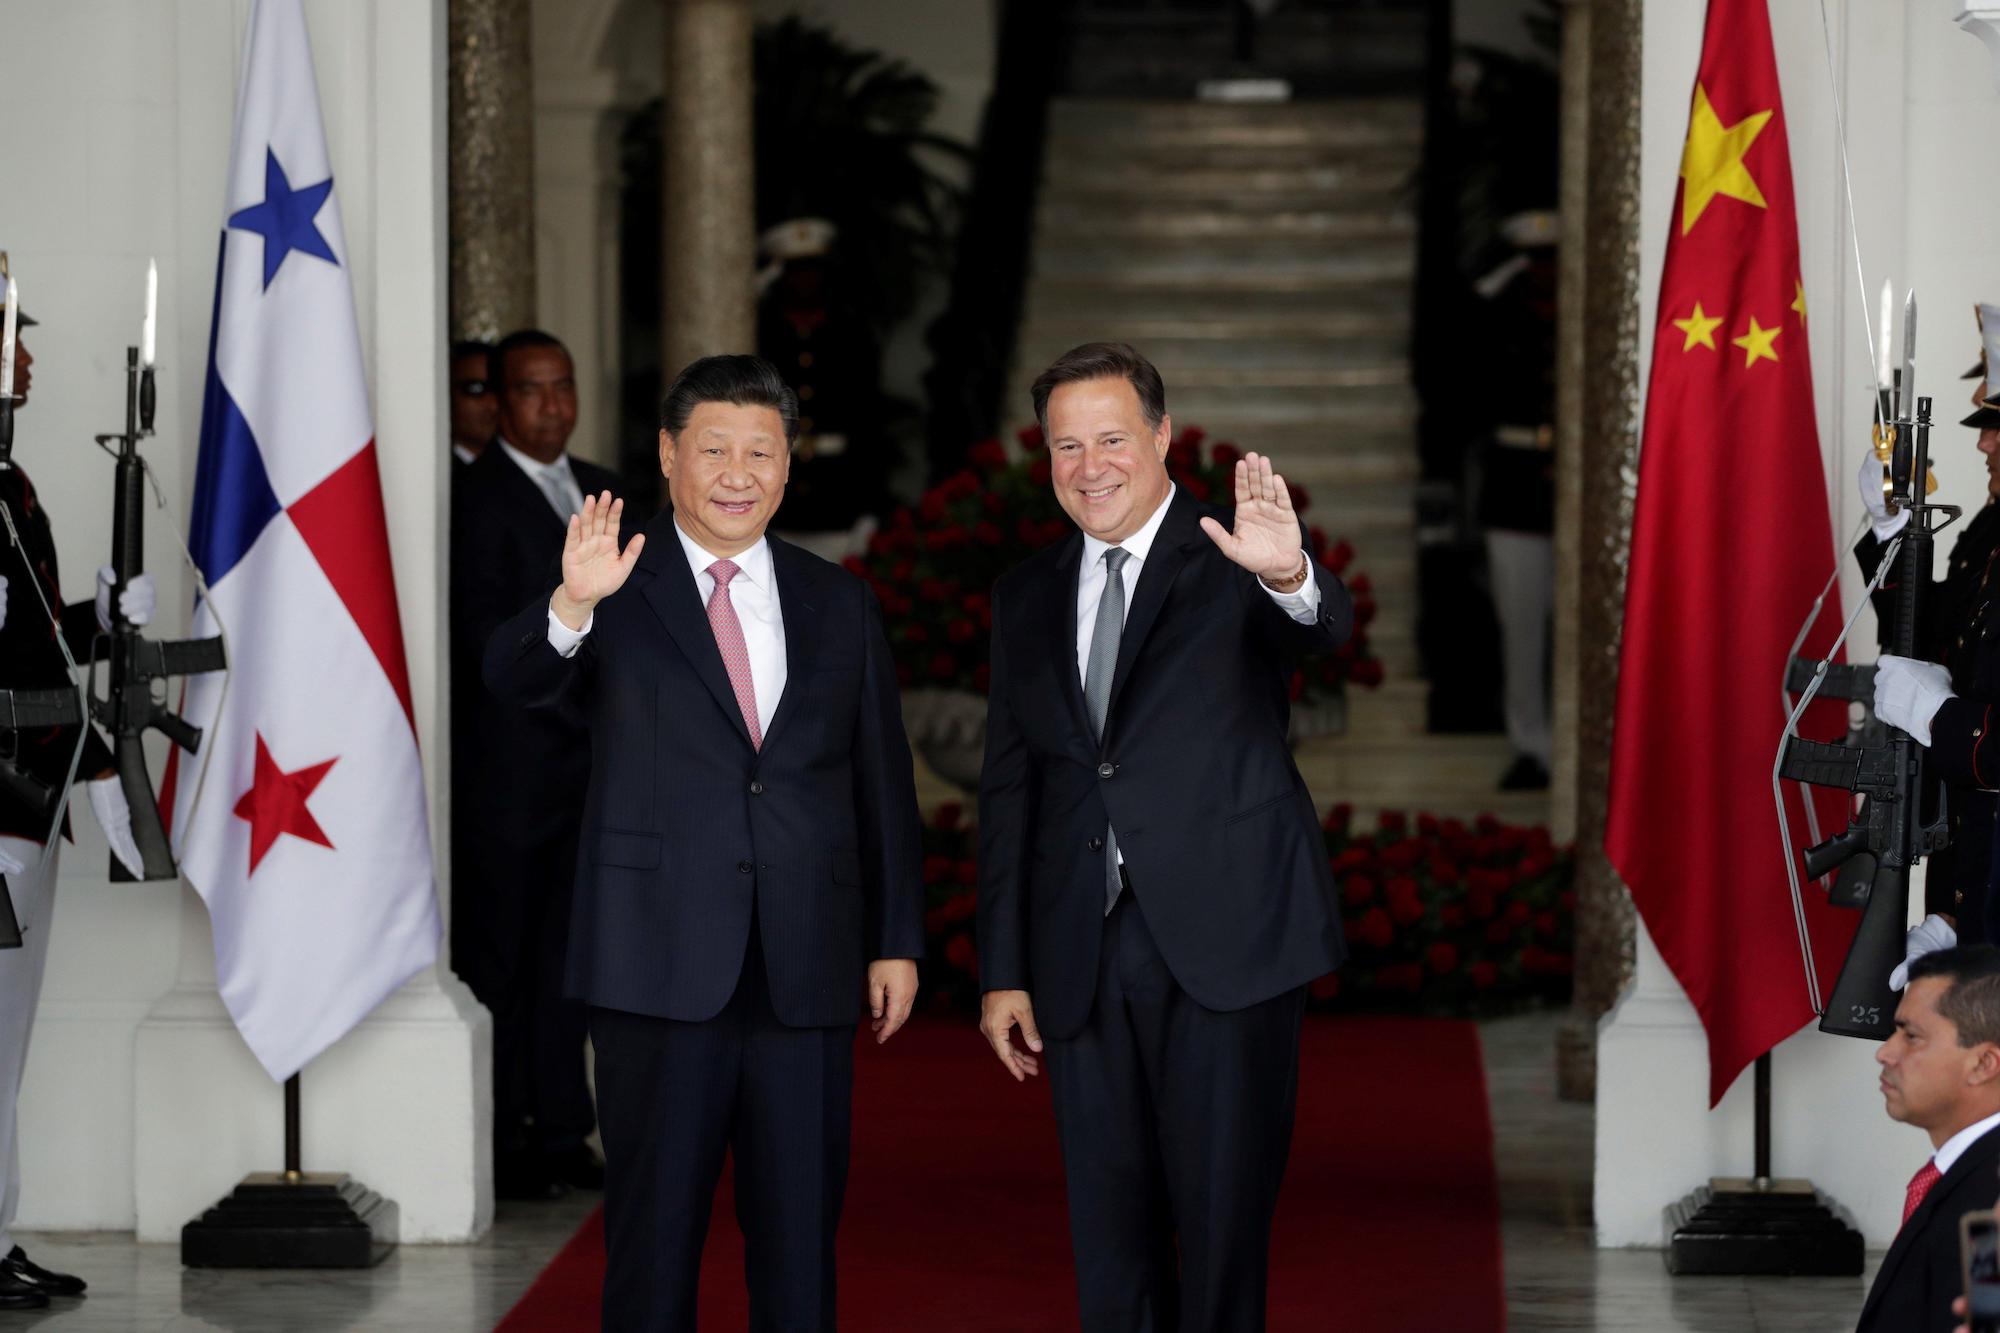 <p>El ex presidente panameño Juan Carlos Varela con Xi Jinping en su visita de estado a Panamá en diciembre de 2018. (Imagen: Alamy)</p>